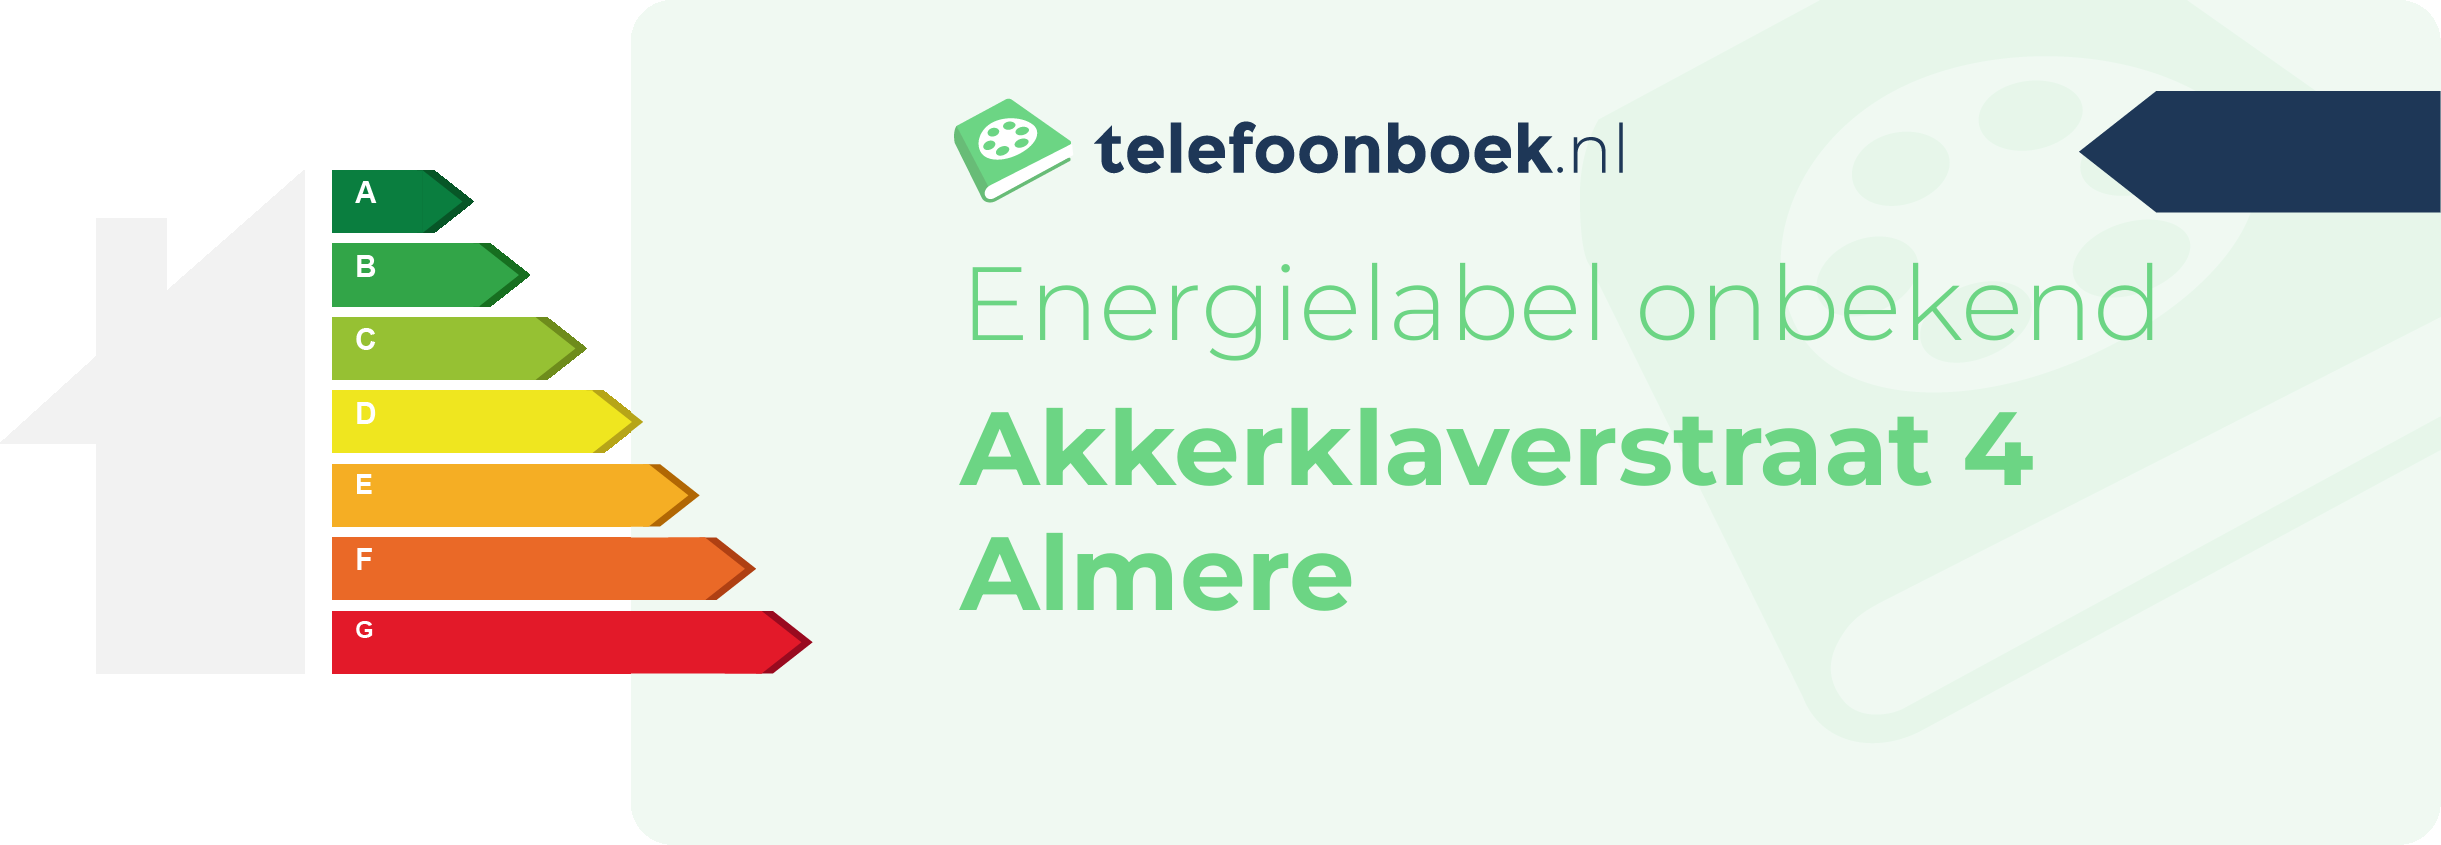 Energielabel Akkerklaverstraat 4 Almere